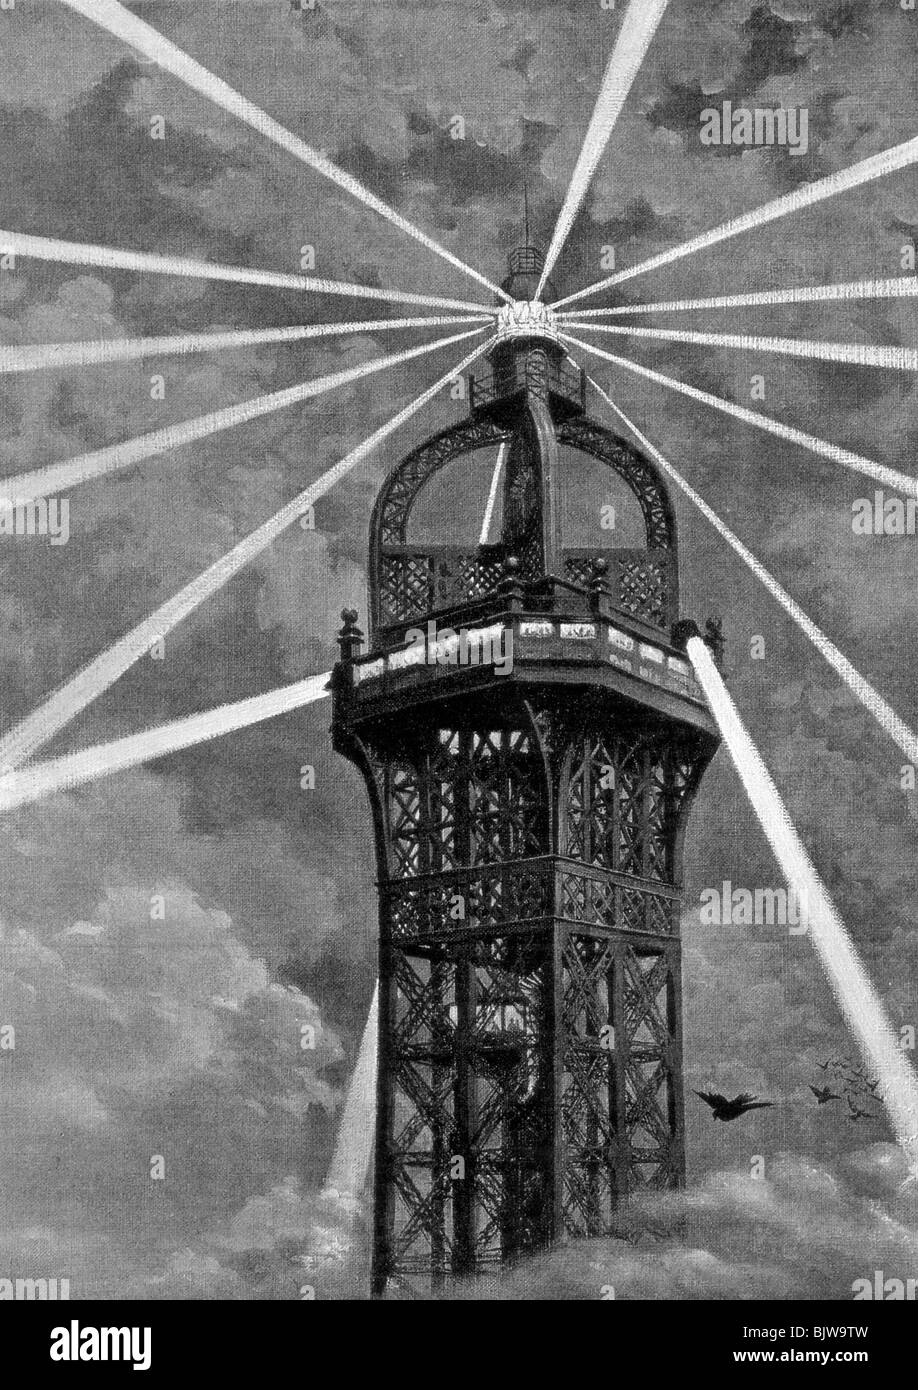 La lumière électrique sur le haut de la Tour Eiffel, Paris, 1889. Artiste : Inconnu Banque D'Images